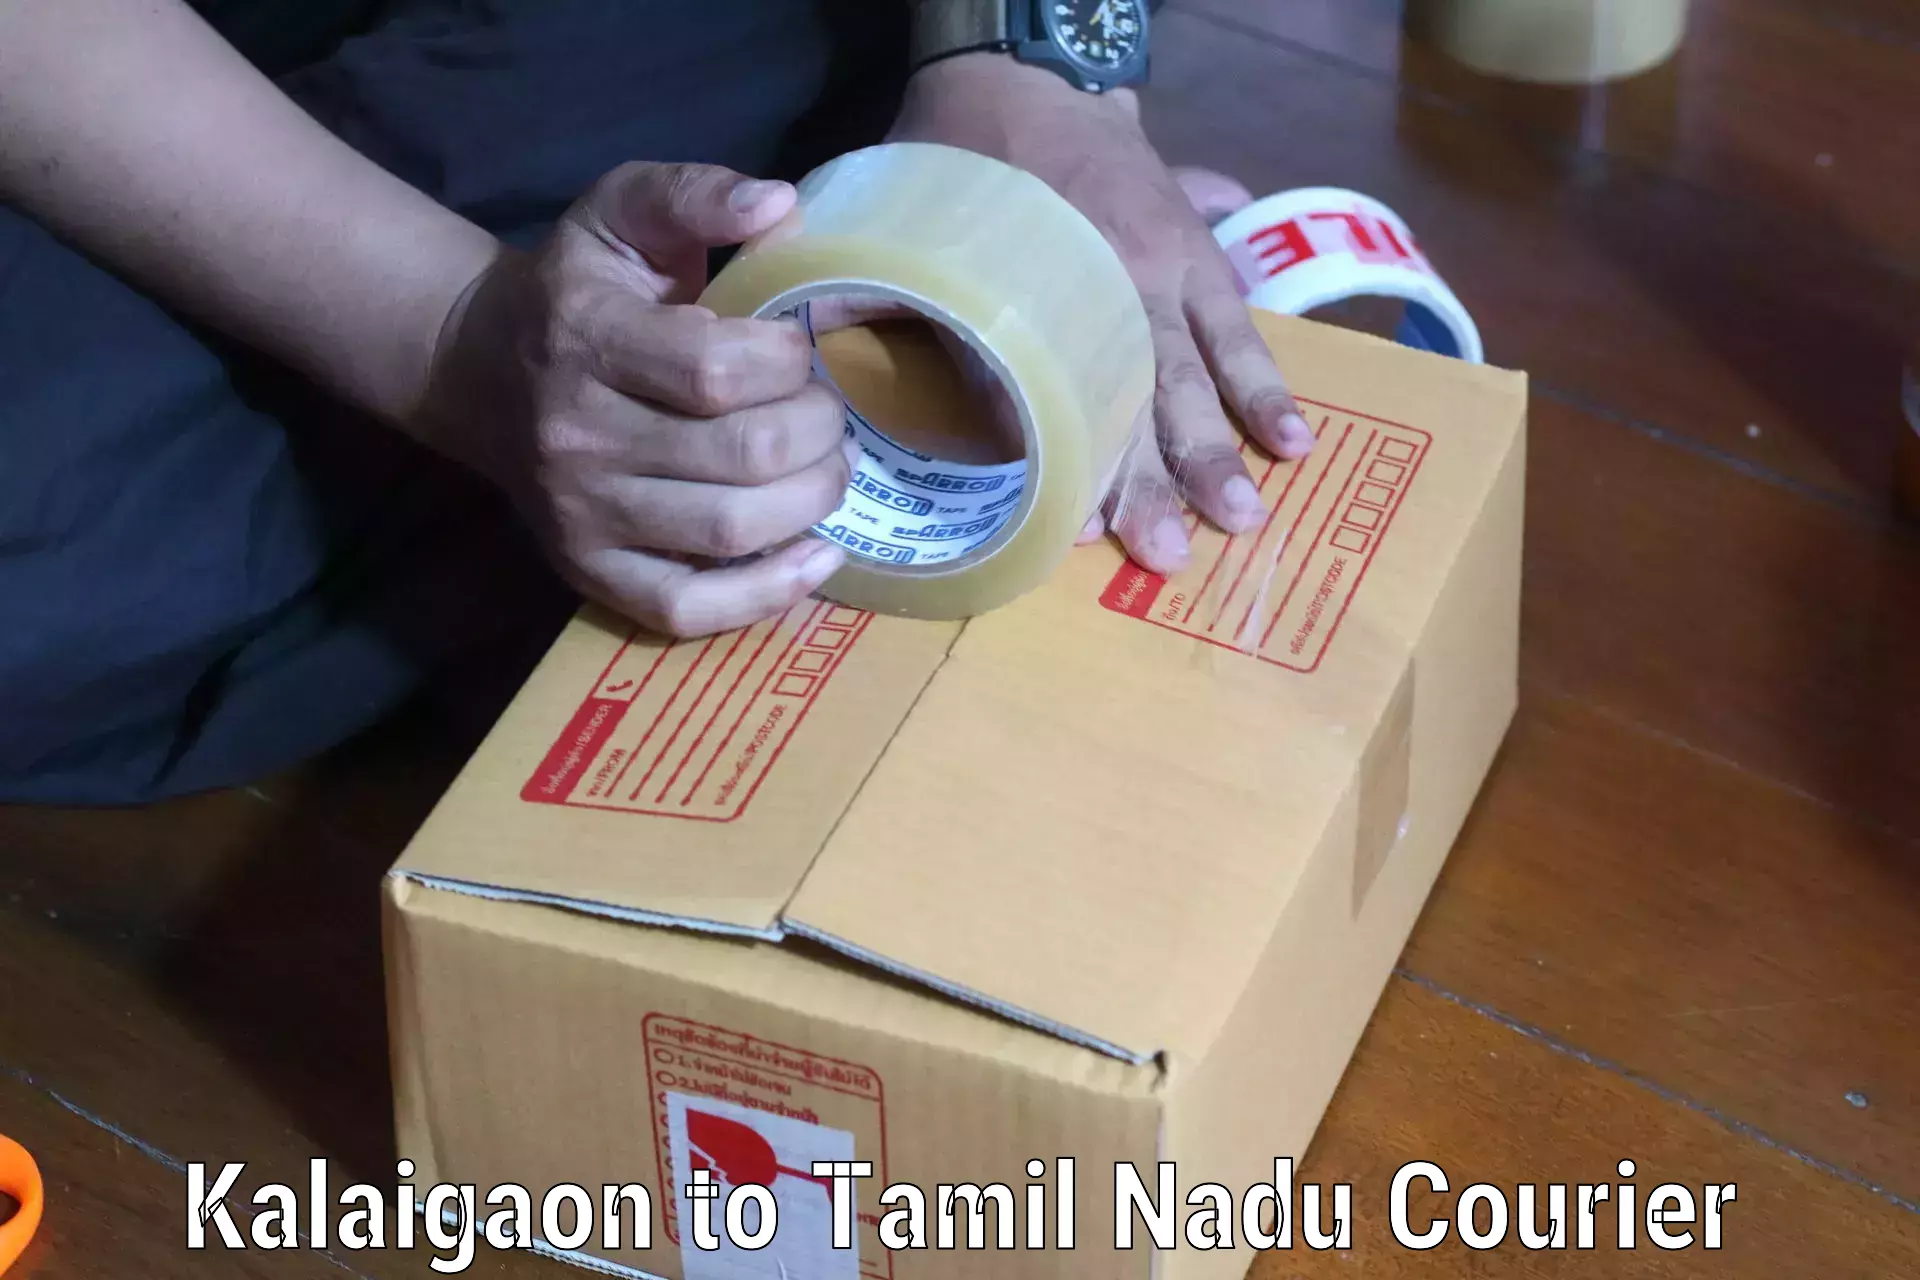 Courier service partnerships Kalaigaon to Villupuram